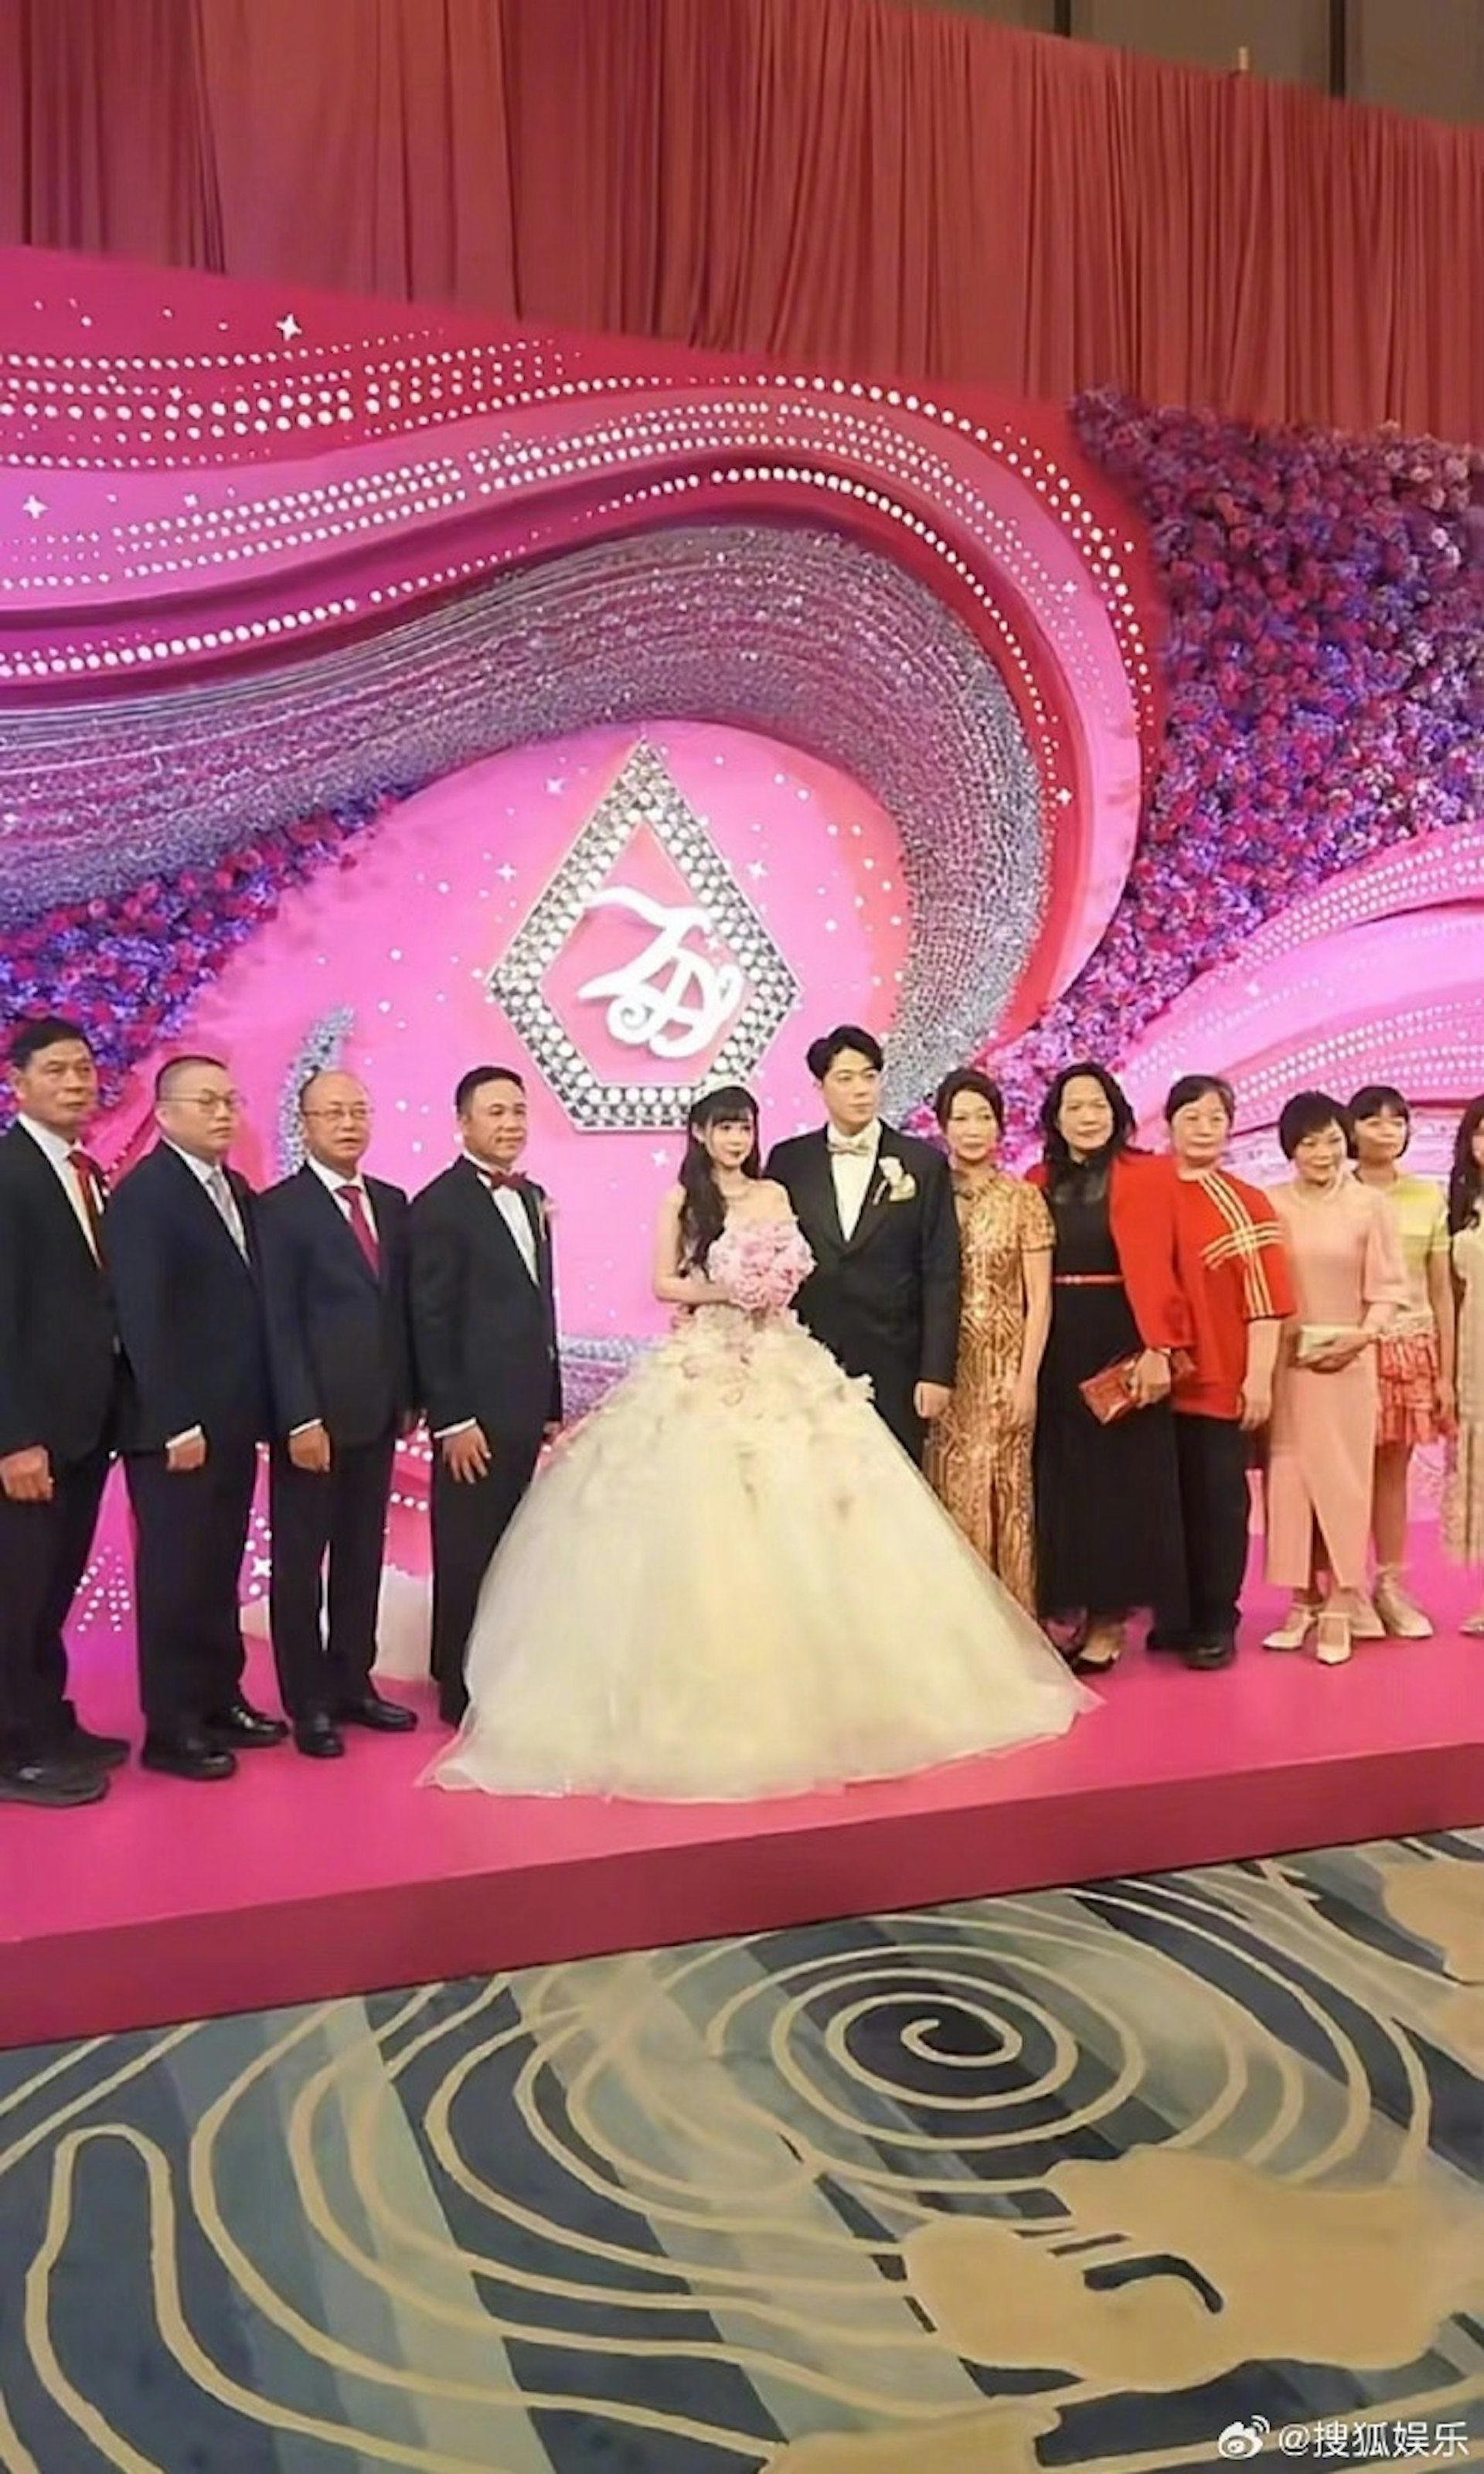 Lộ ảnh hôn lễ của 2 rich kid Trung Quốc khiến dân mạng xôn xao - 1